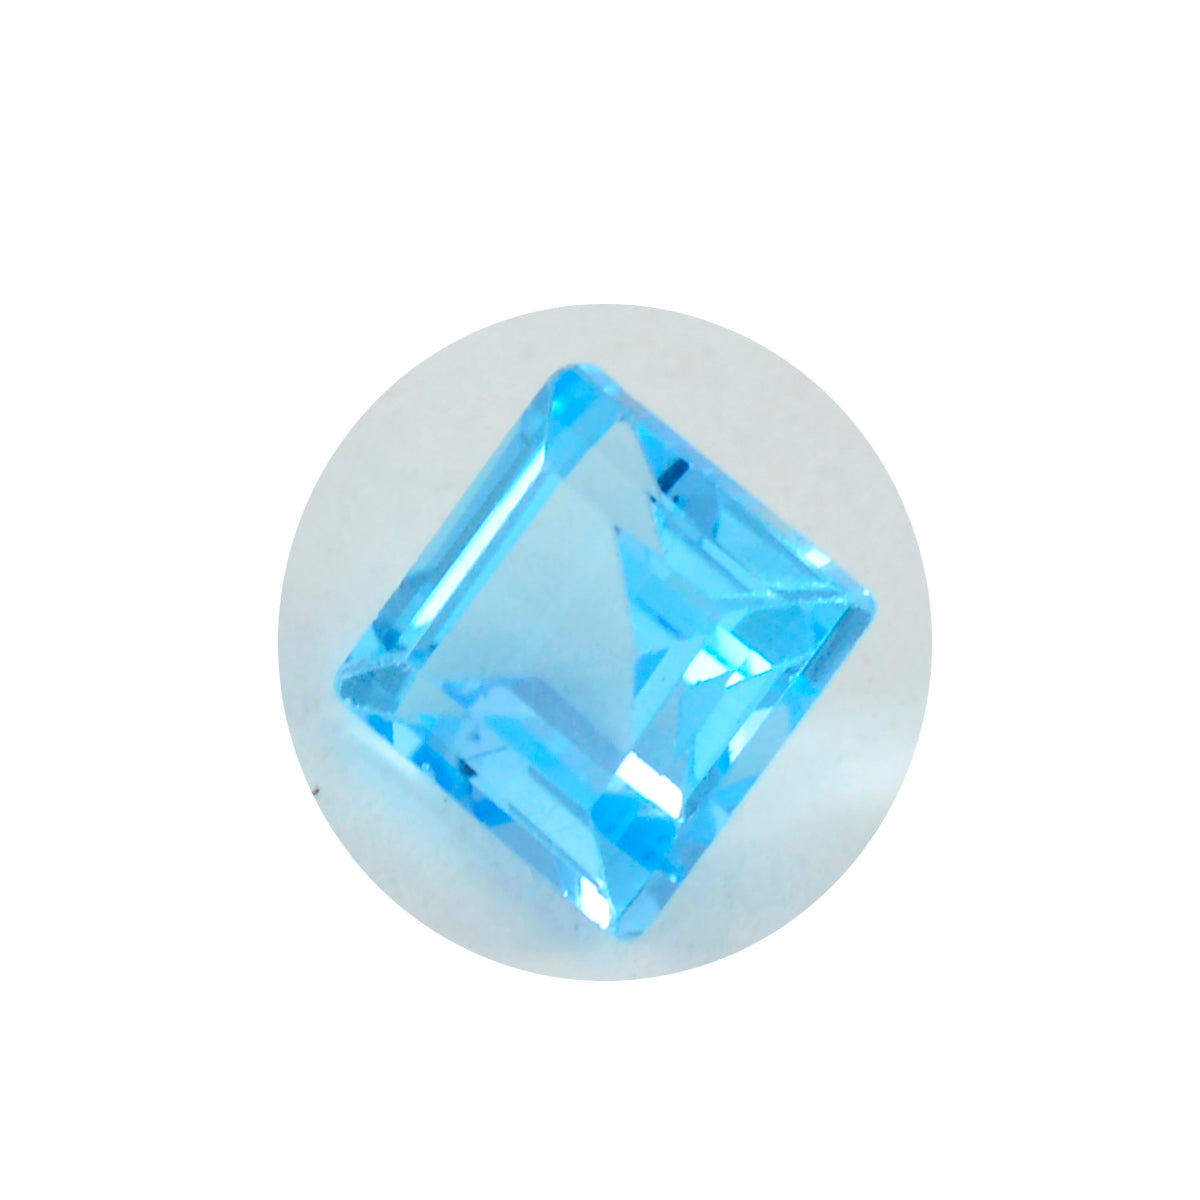 Riyogems 1 Stück natürlicher blauer Topas, facettiert, 11 x 11 mm, quadratische Form, gut aussehender, hochwertiger loser Edelstein